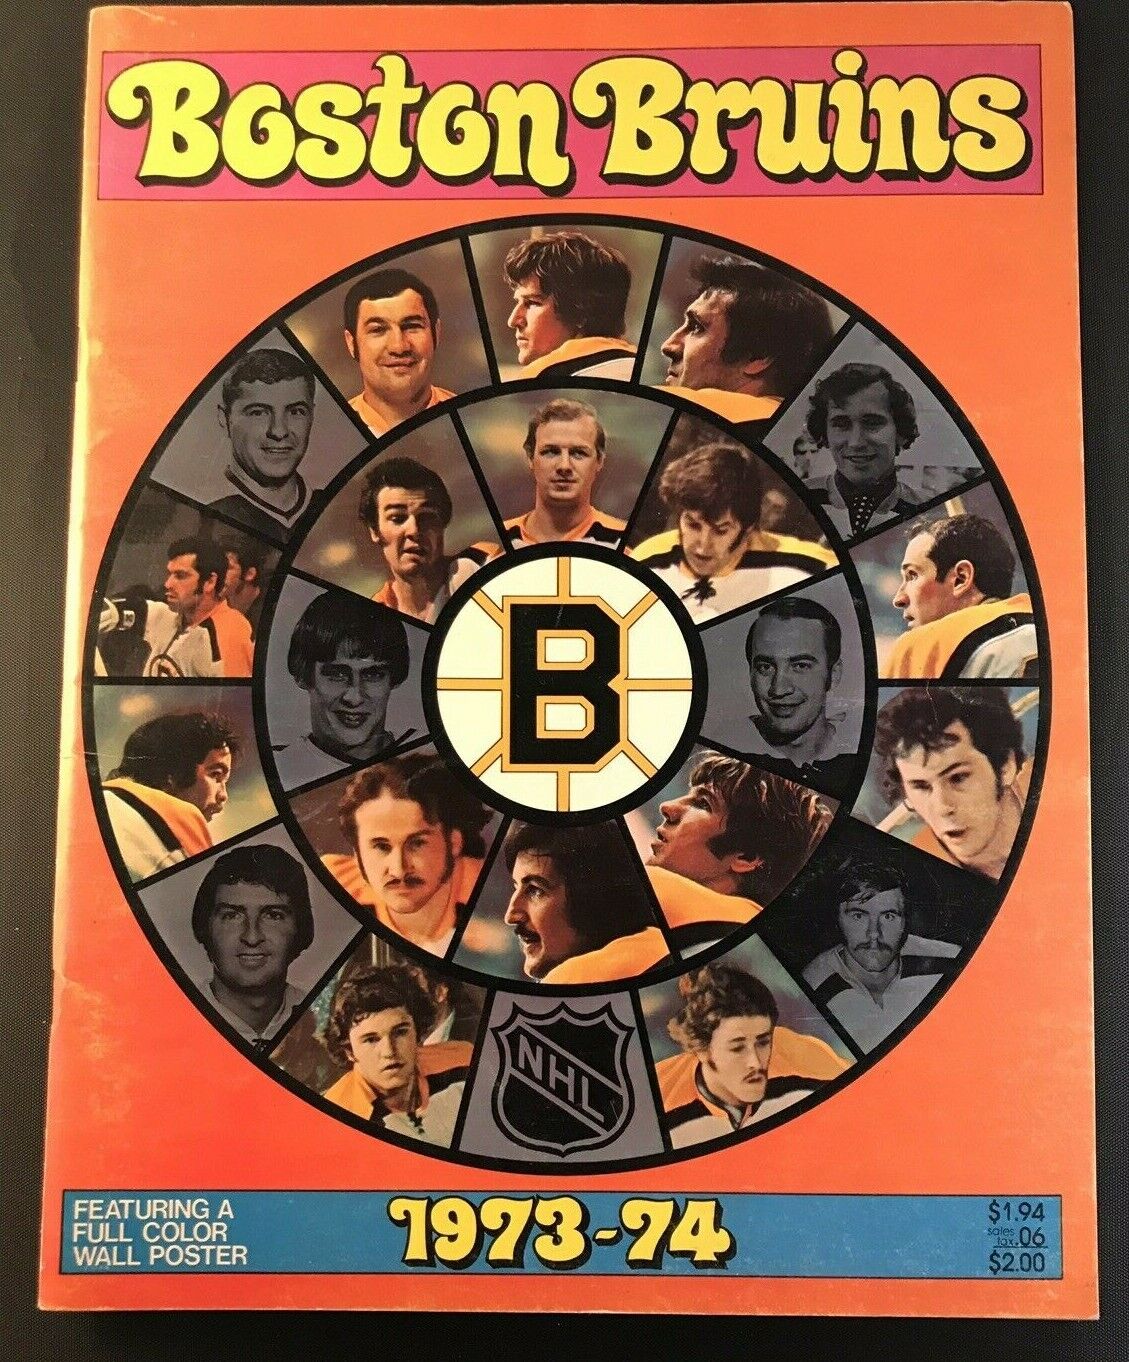 1973-74 Boston Bruins Yearbook Bobby Orr w/Poster TerryO'Reilly/Esposito/ Bucyk